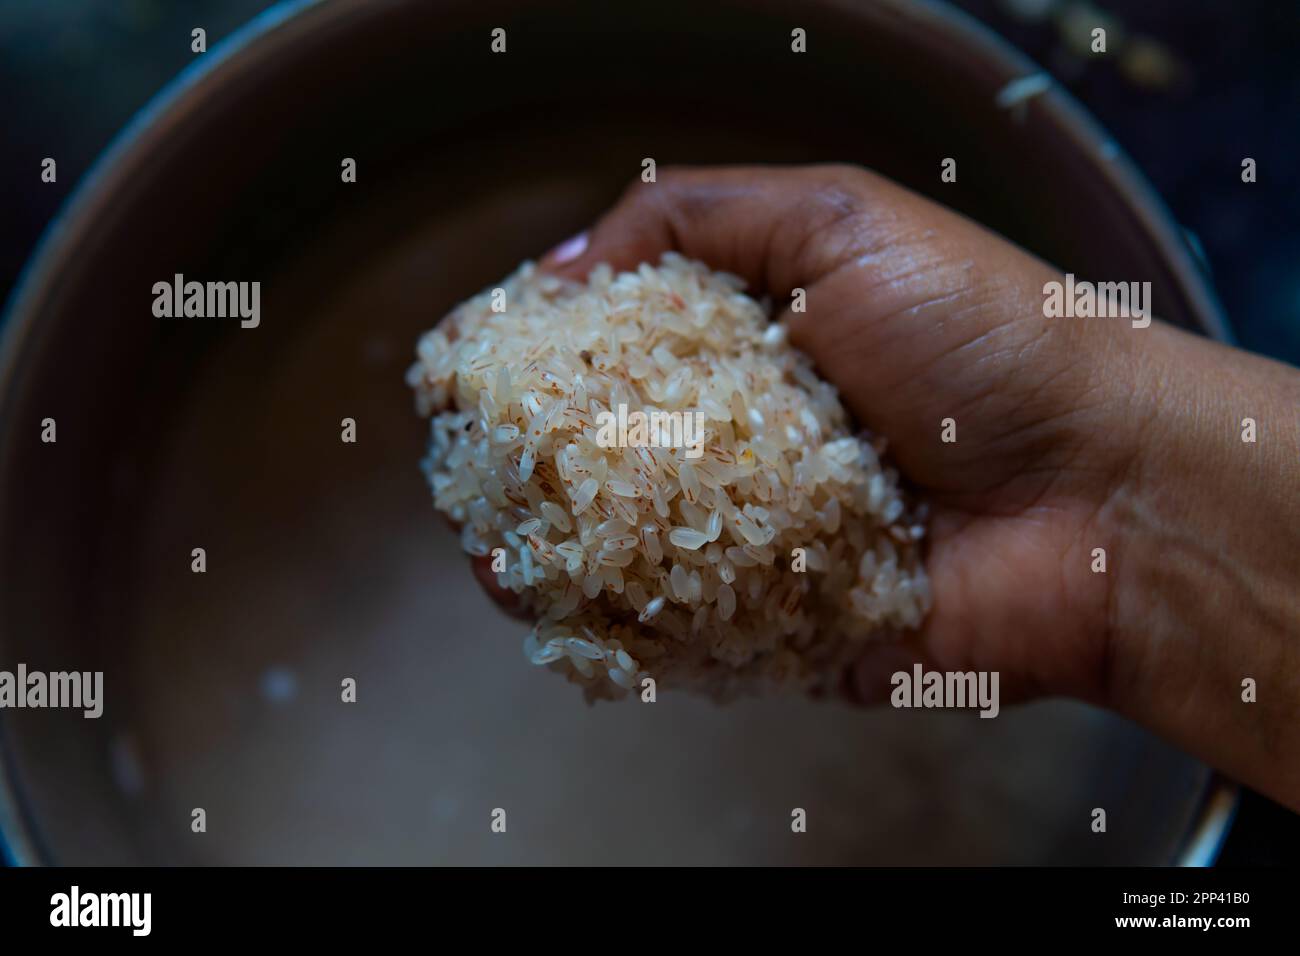 Getränkter organischer, nicht polierter Reis, der von Hand mit der Schüssel im Hintergrund mit Wasser aufgefüllt wurde, in dem er getränkt wurde. Wasserbraune Farbe Stockfoto